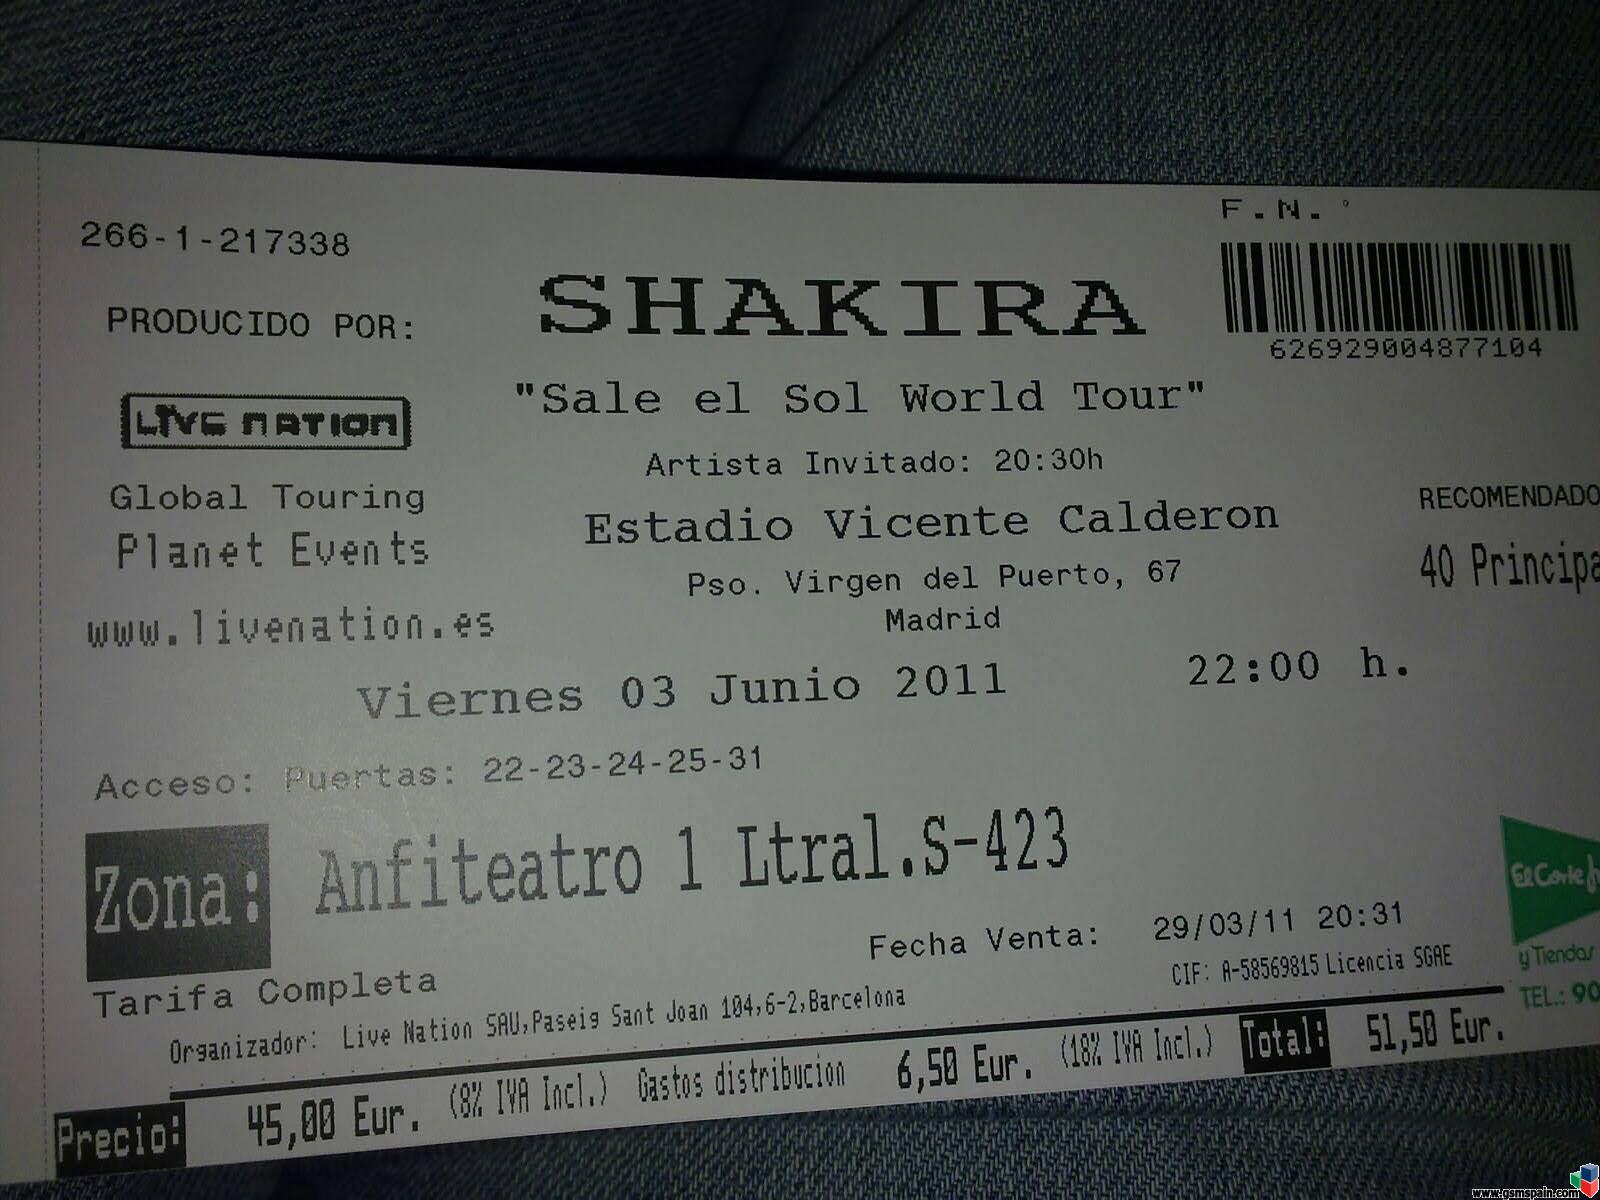 [VENDO] 2 entradas de Shakira para el concierto de Madrid del dia 3 junio